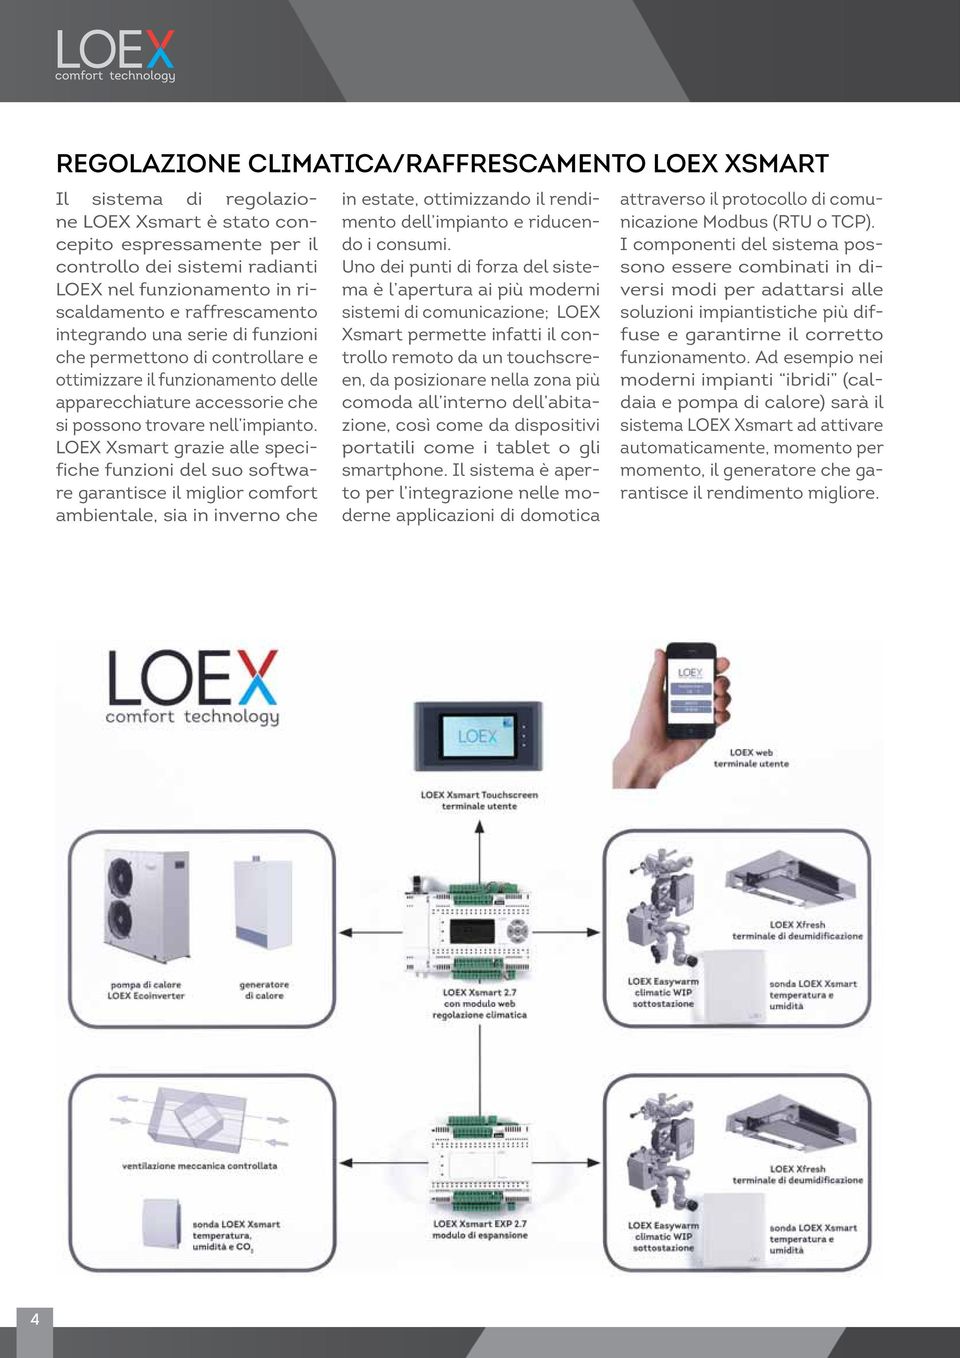 LOEX Xsmart grazie alle specifiche funzioni del suo software garantisce il miglior comfort ambientale, sia in inverno che in estate, ottimizzando il rendimento dell impianto e riducendo i consumi.